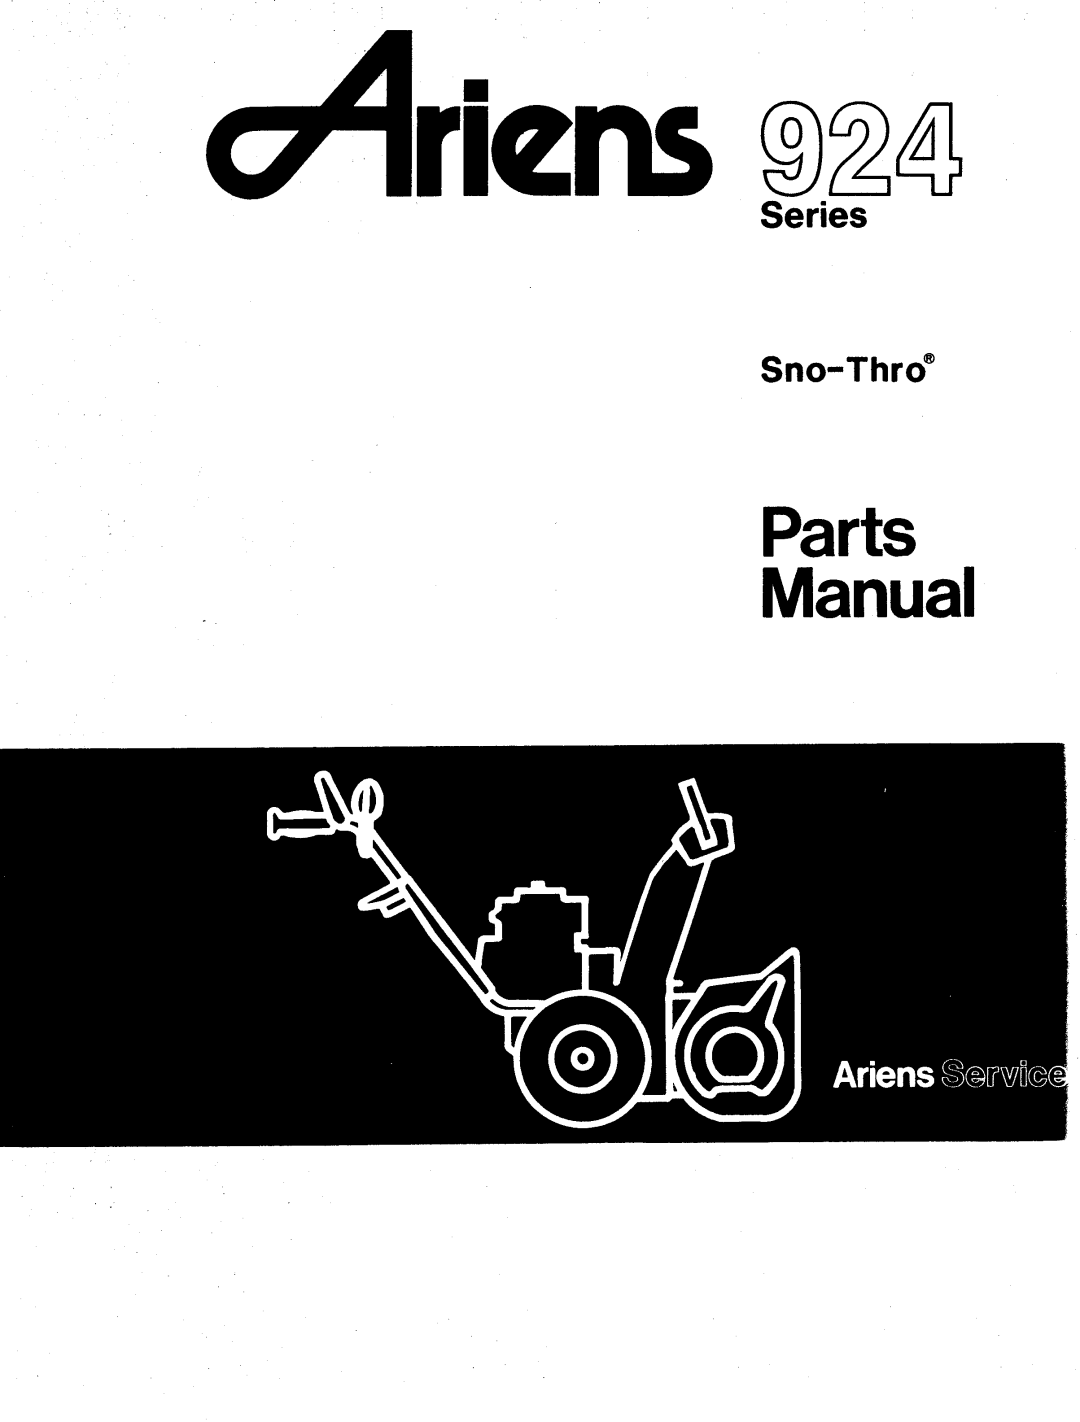 Ariens 924 manual 